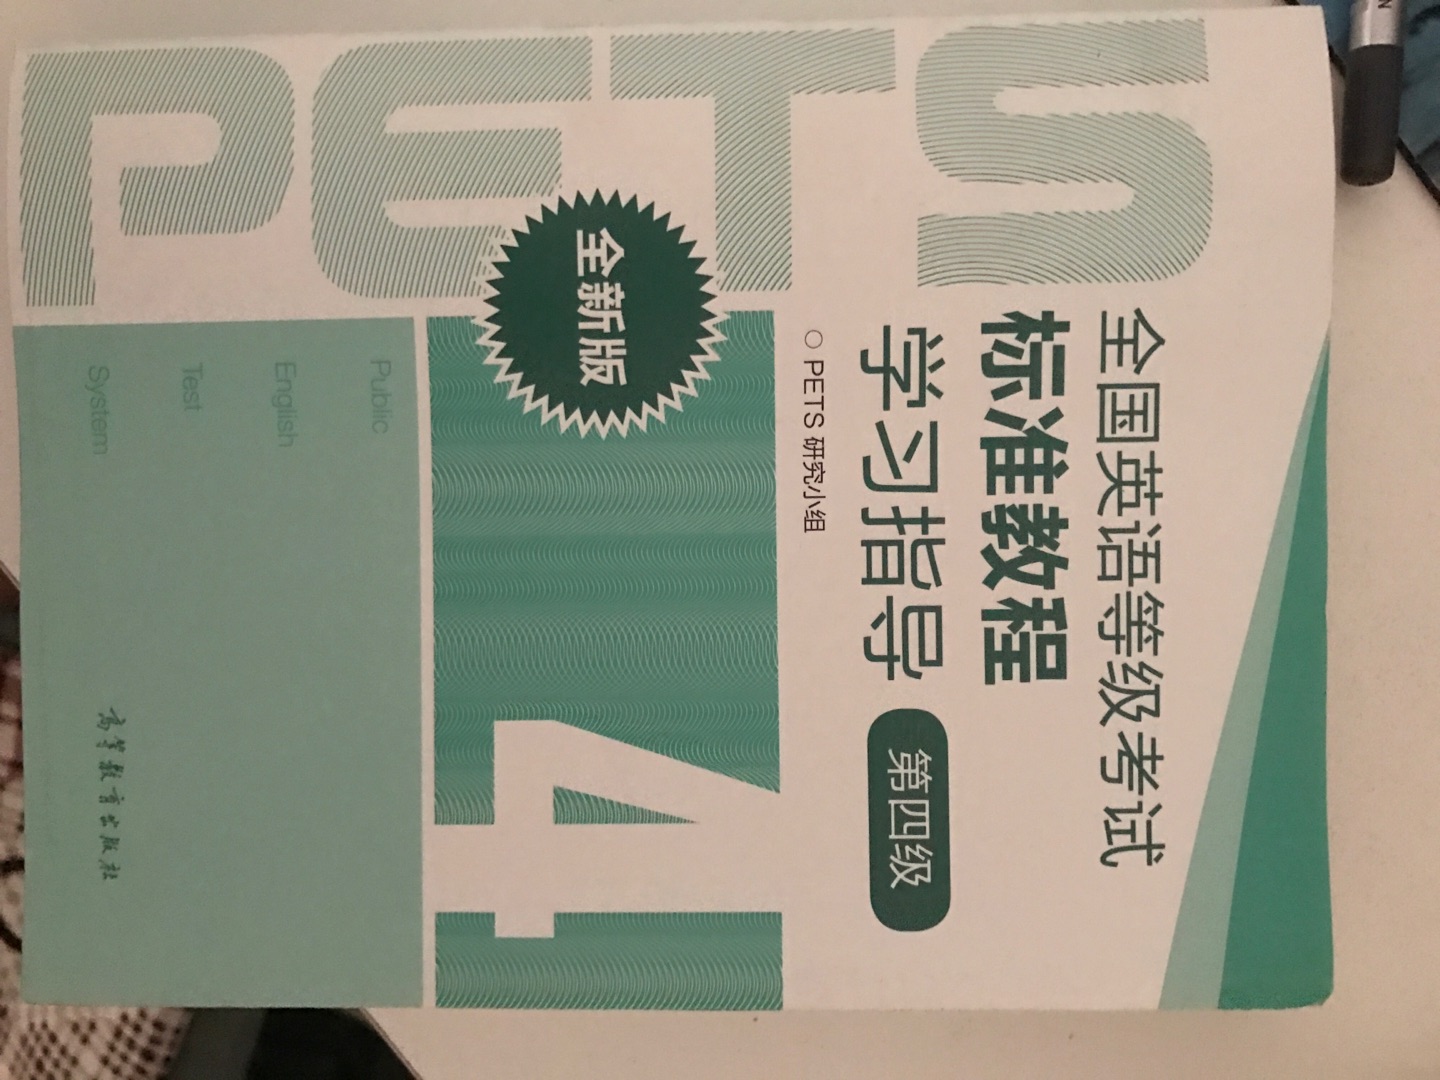 PETS4级的学习指导，适合自学英语的人看。正版，印刷优良